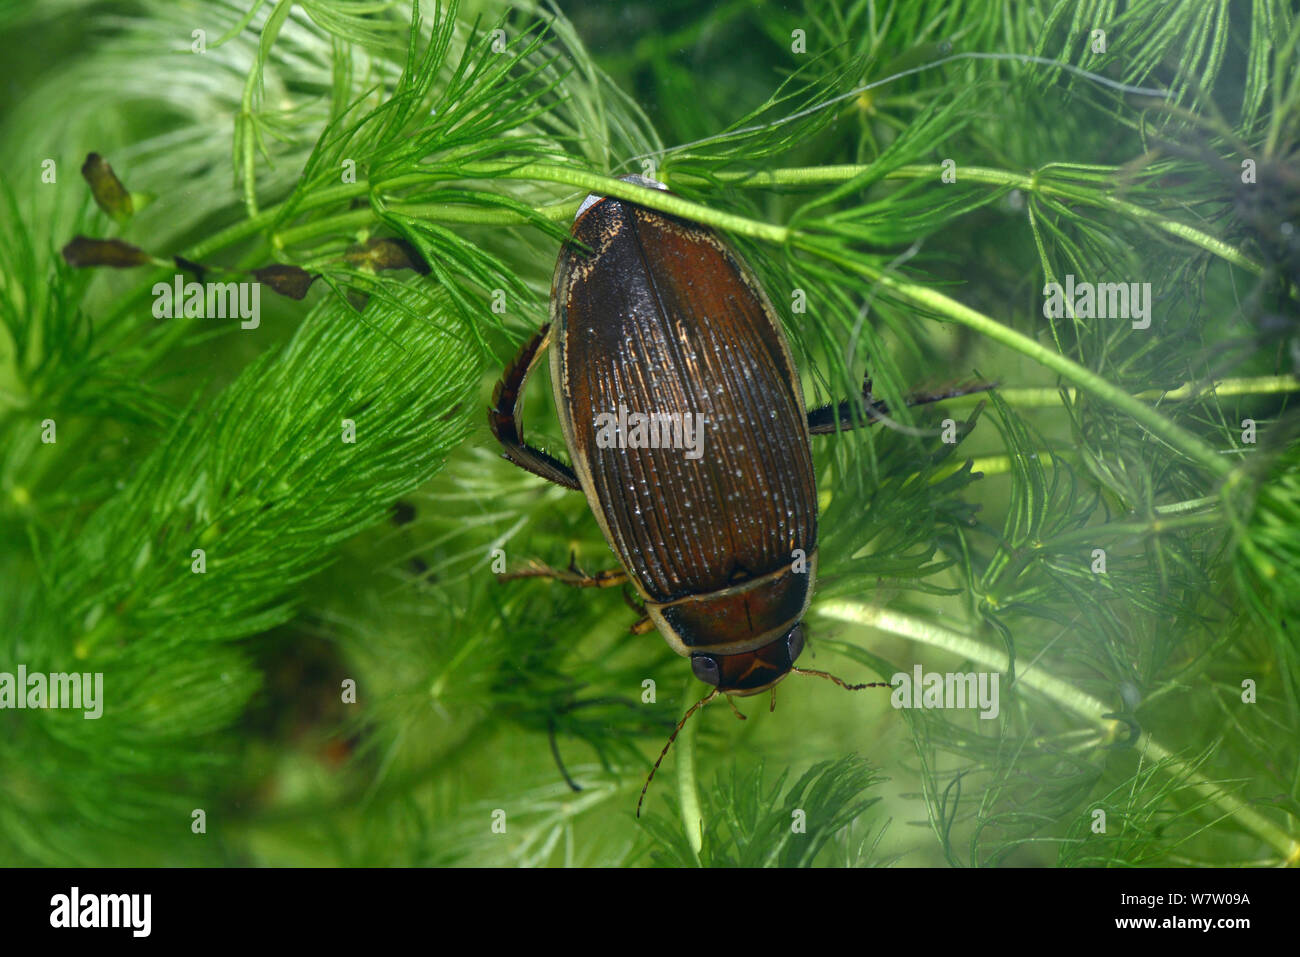 Femmina grande diving beetle (Dytiscus circumflexus), poggiante su Hornwort, UK, captive. Foto Stock